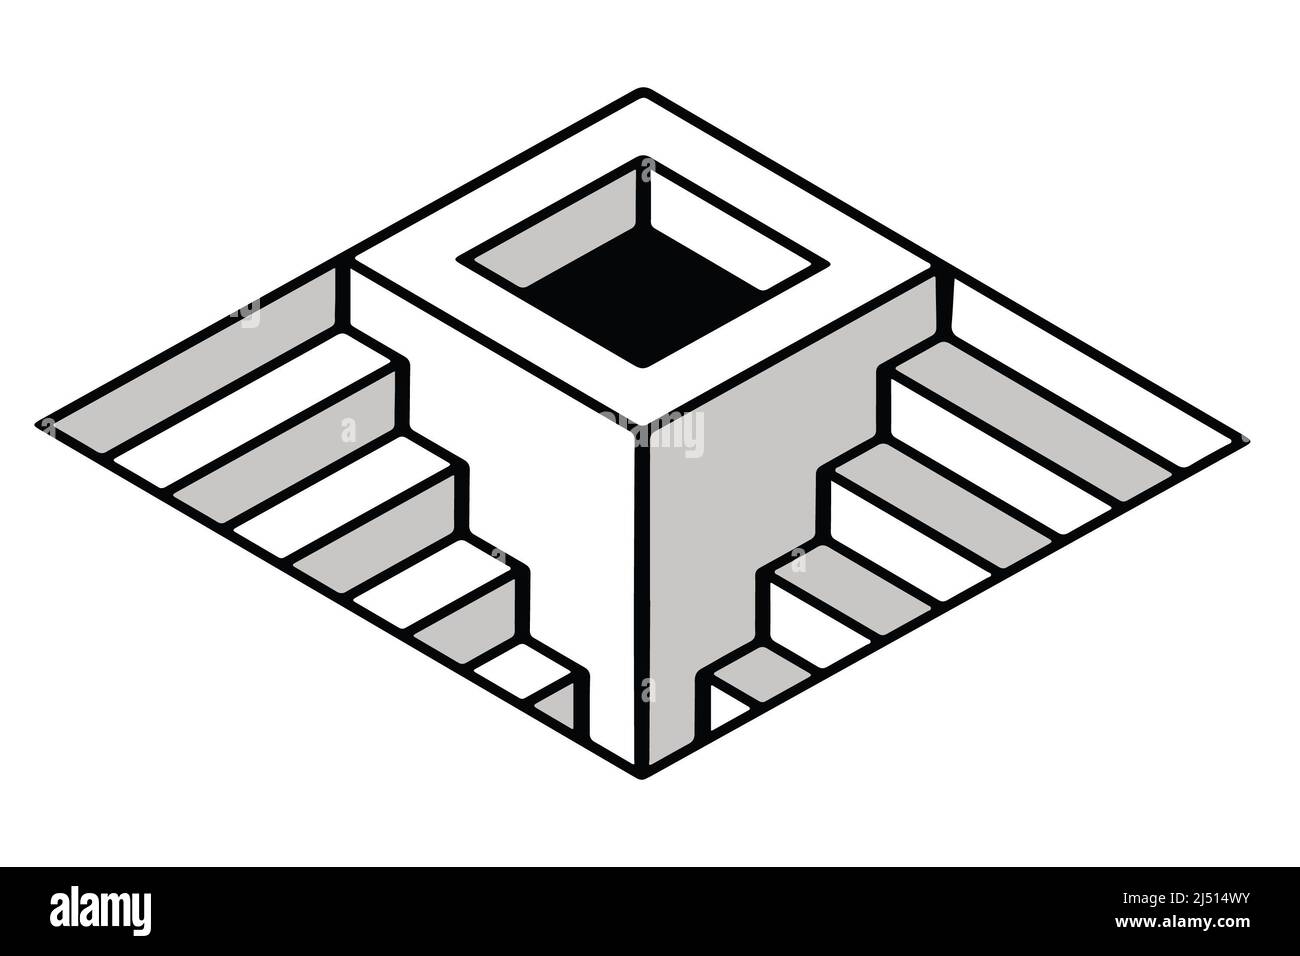 Imagen vectorial en blanco y negro de una figura rhombus con pasos en el interior Foto de stock